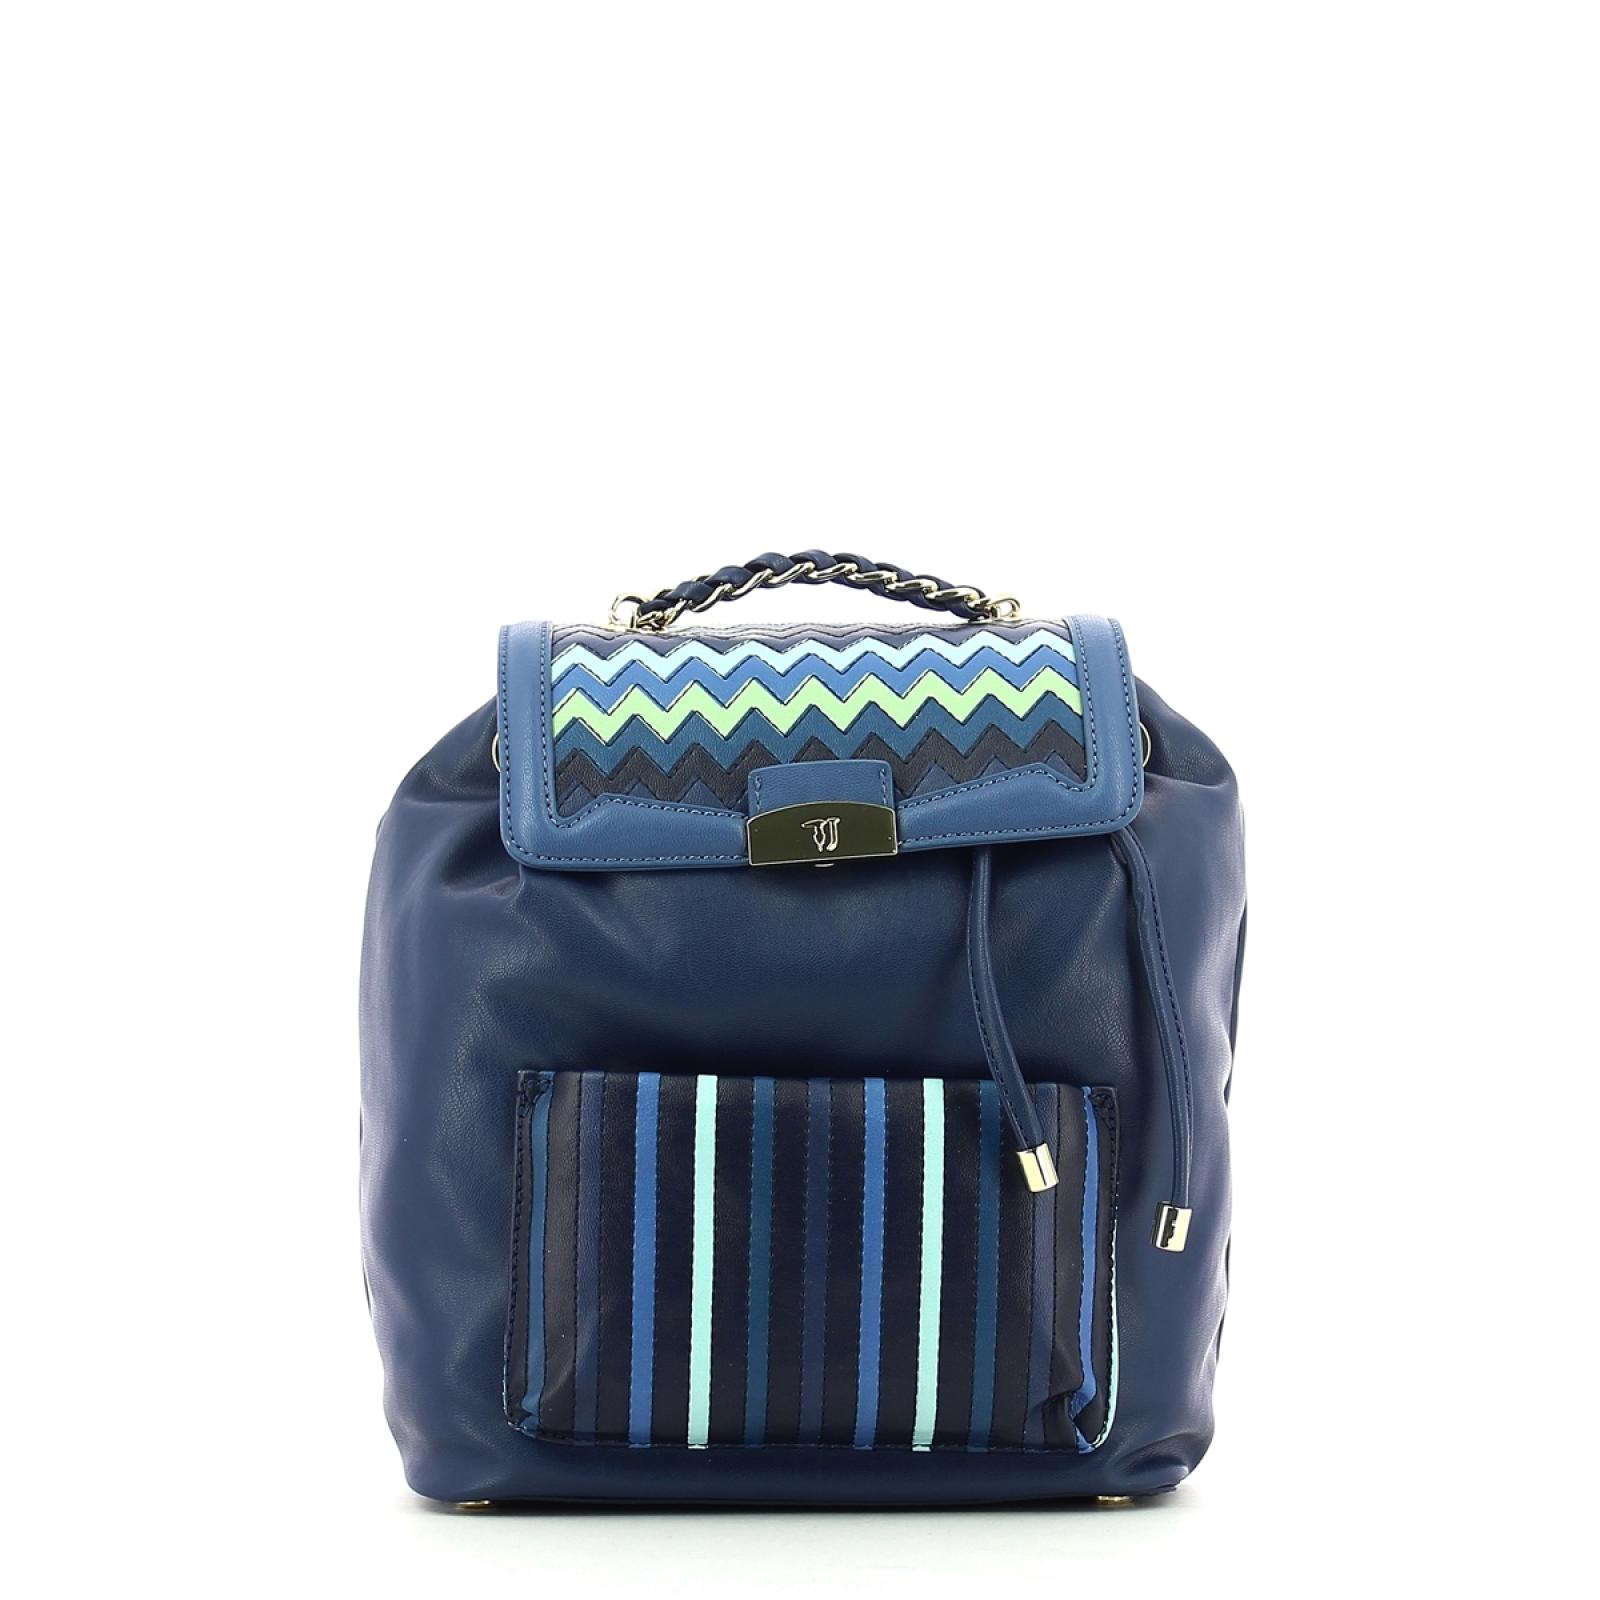 Backpack Saint Tropez-BLUE-UN